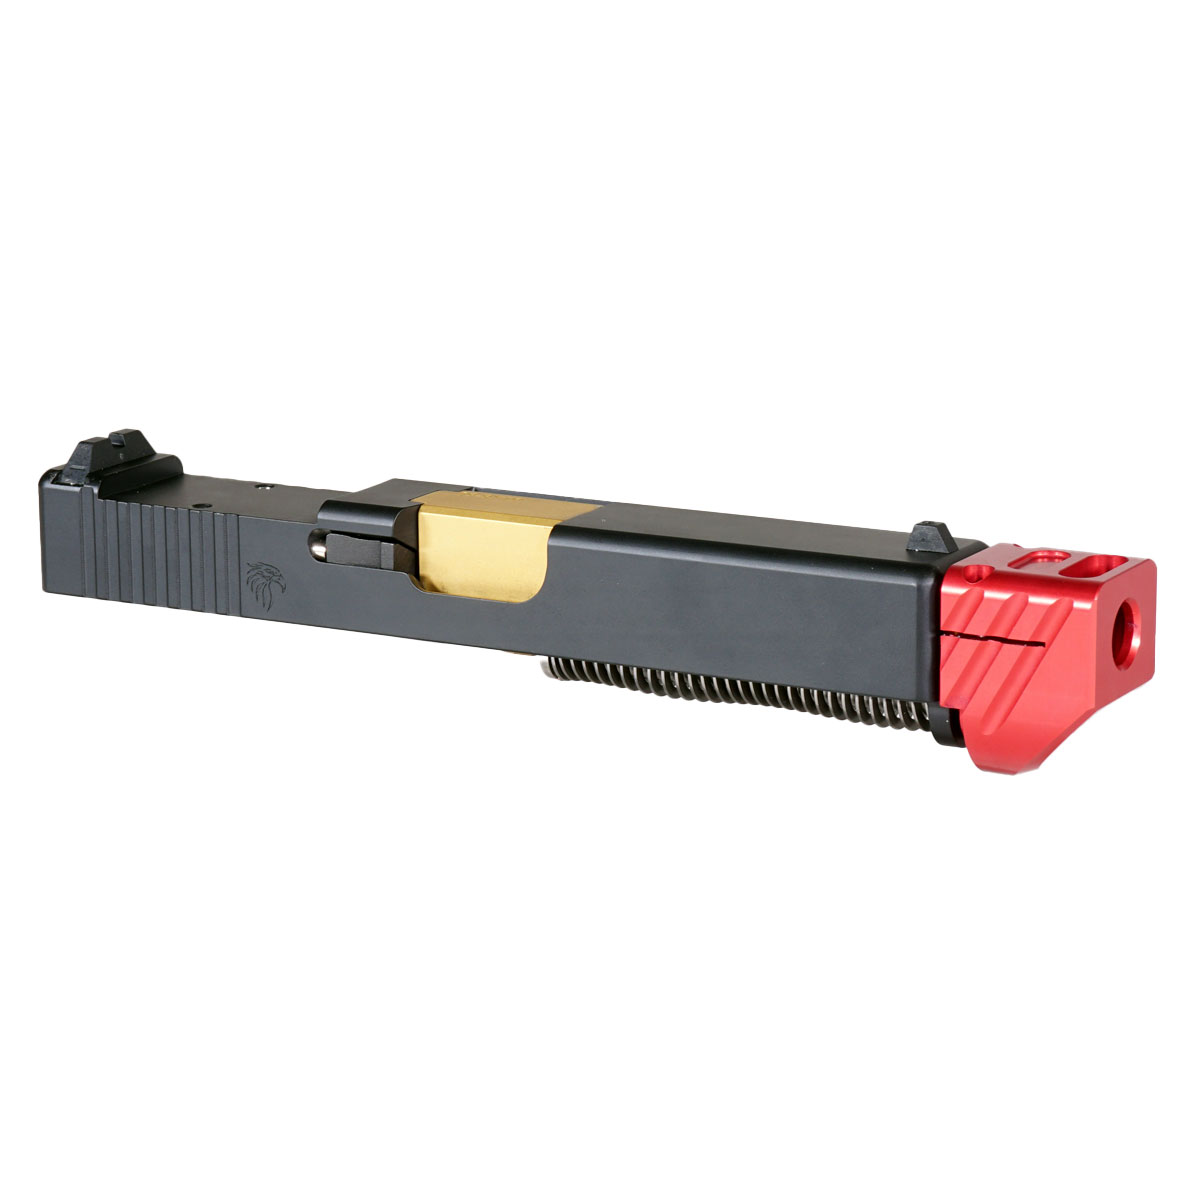 DD 'Skyflash V3 w/ Red Compensator' 9mm Complete Slide Kit - Glock 19 Gen 1-3 Compatible